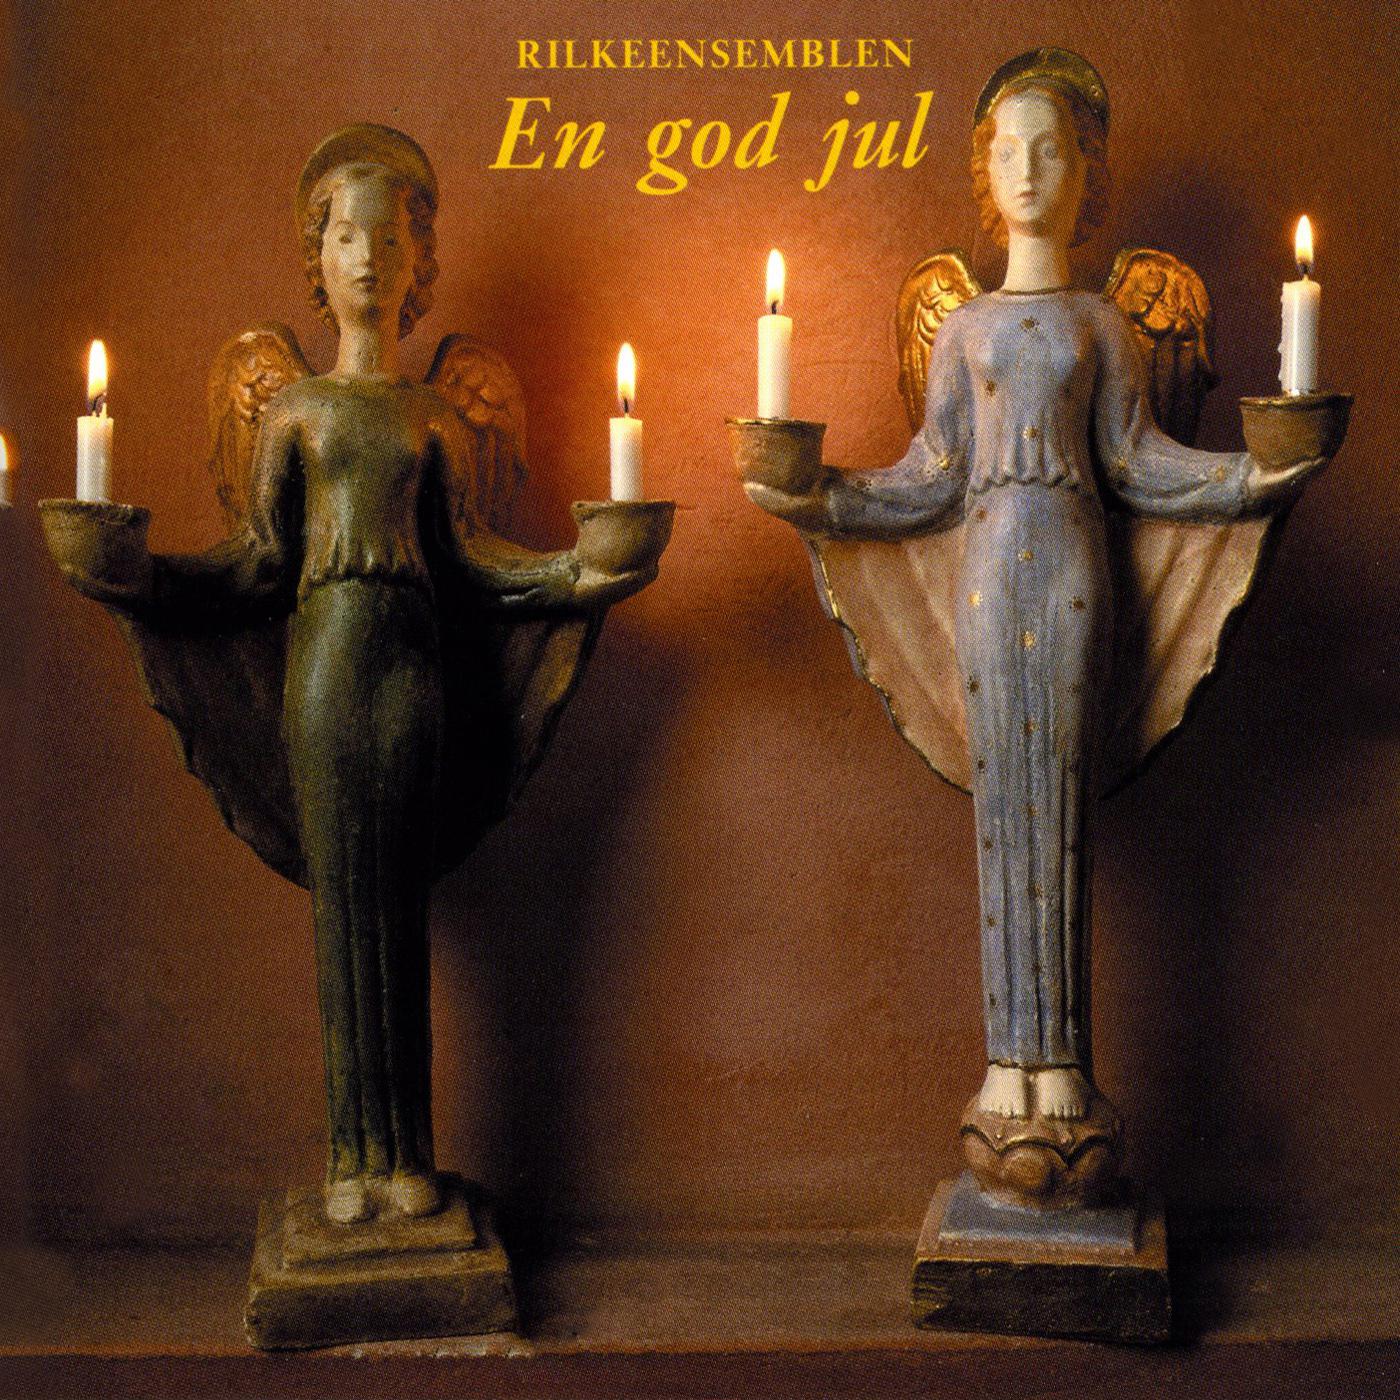 Rilke Ensemble - Jul, jul stralande jul (Christmas, Radiant Christmas) (arr. for vocal ensemble)